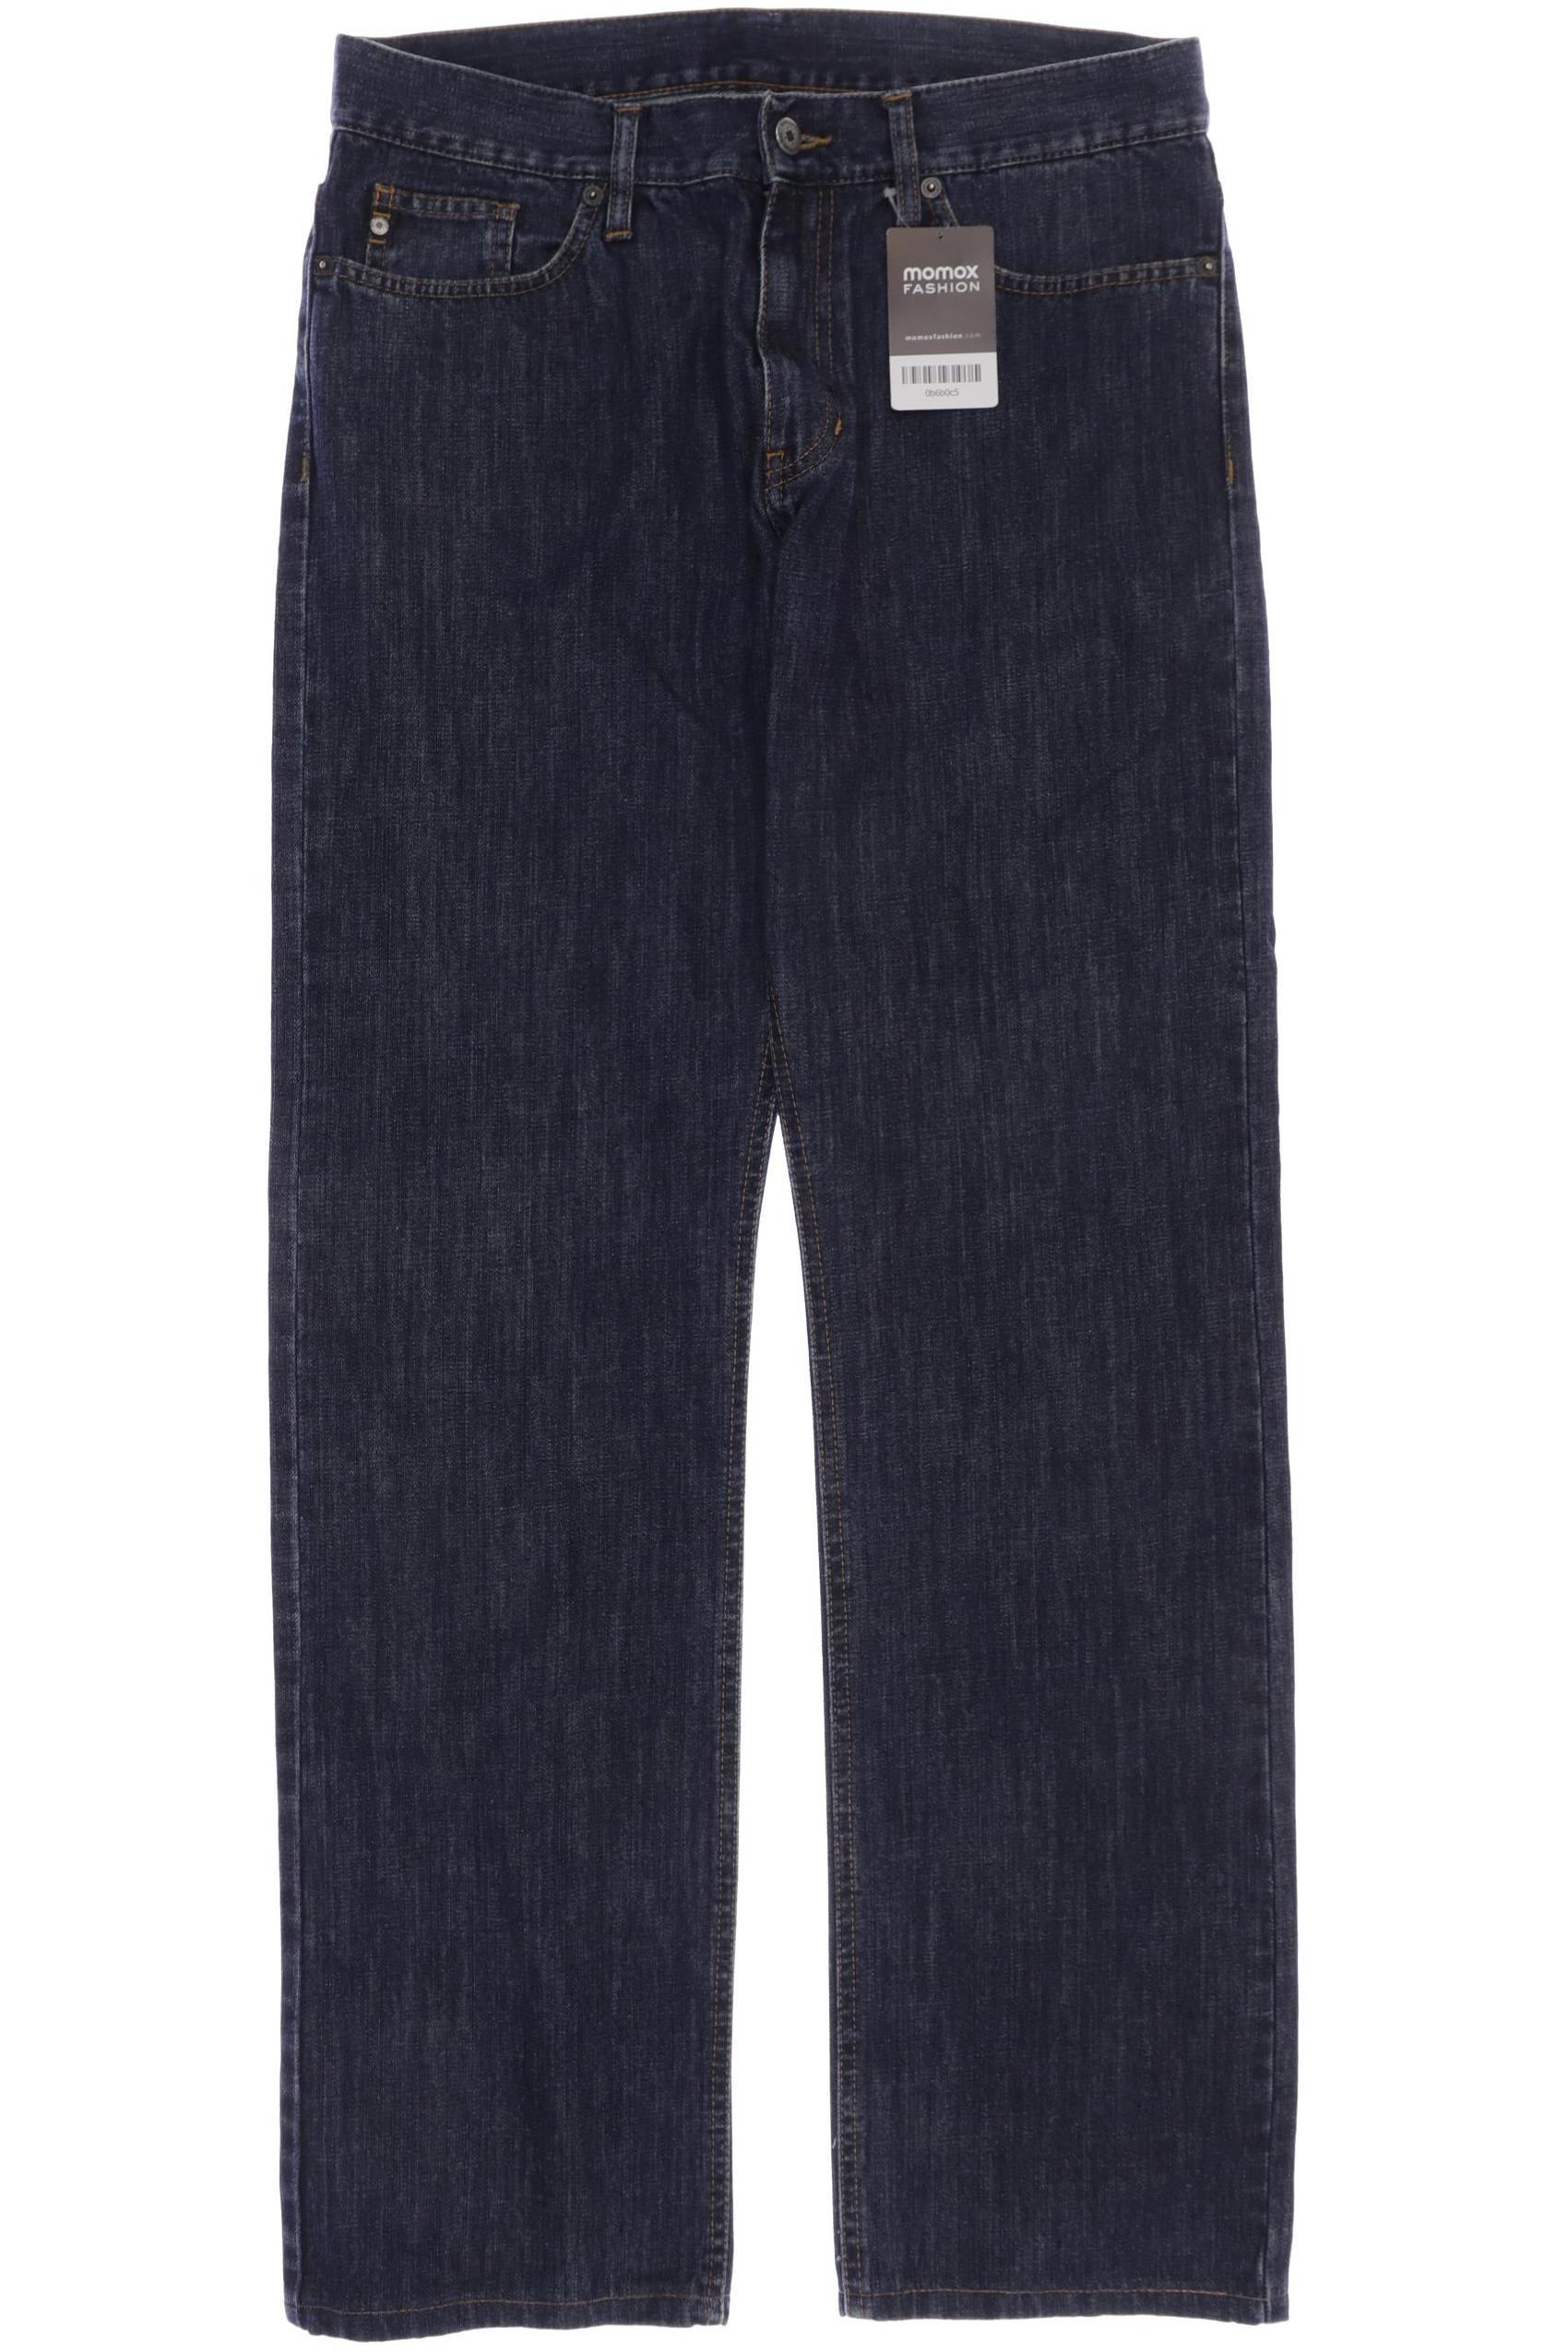 Burlington Herren Jeans, marineblau